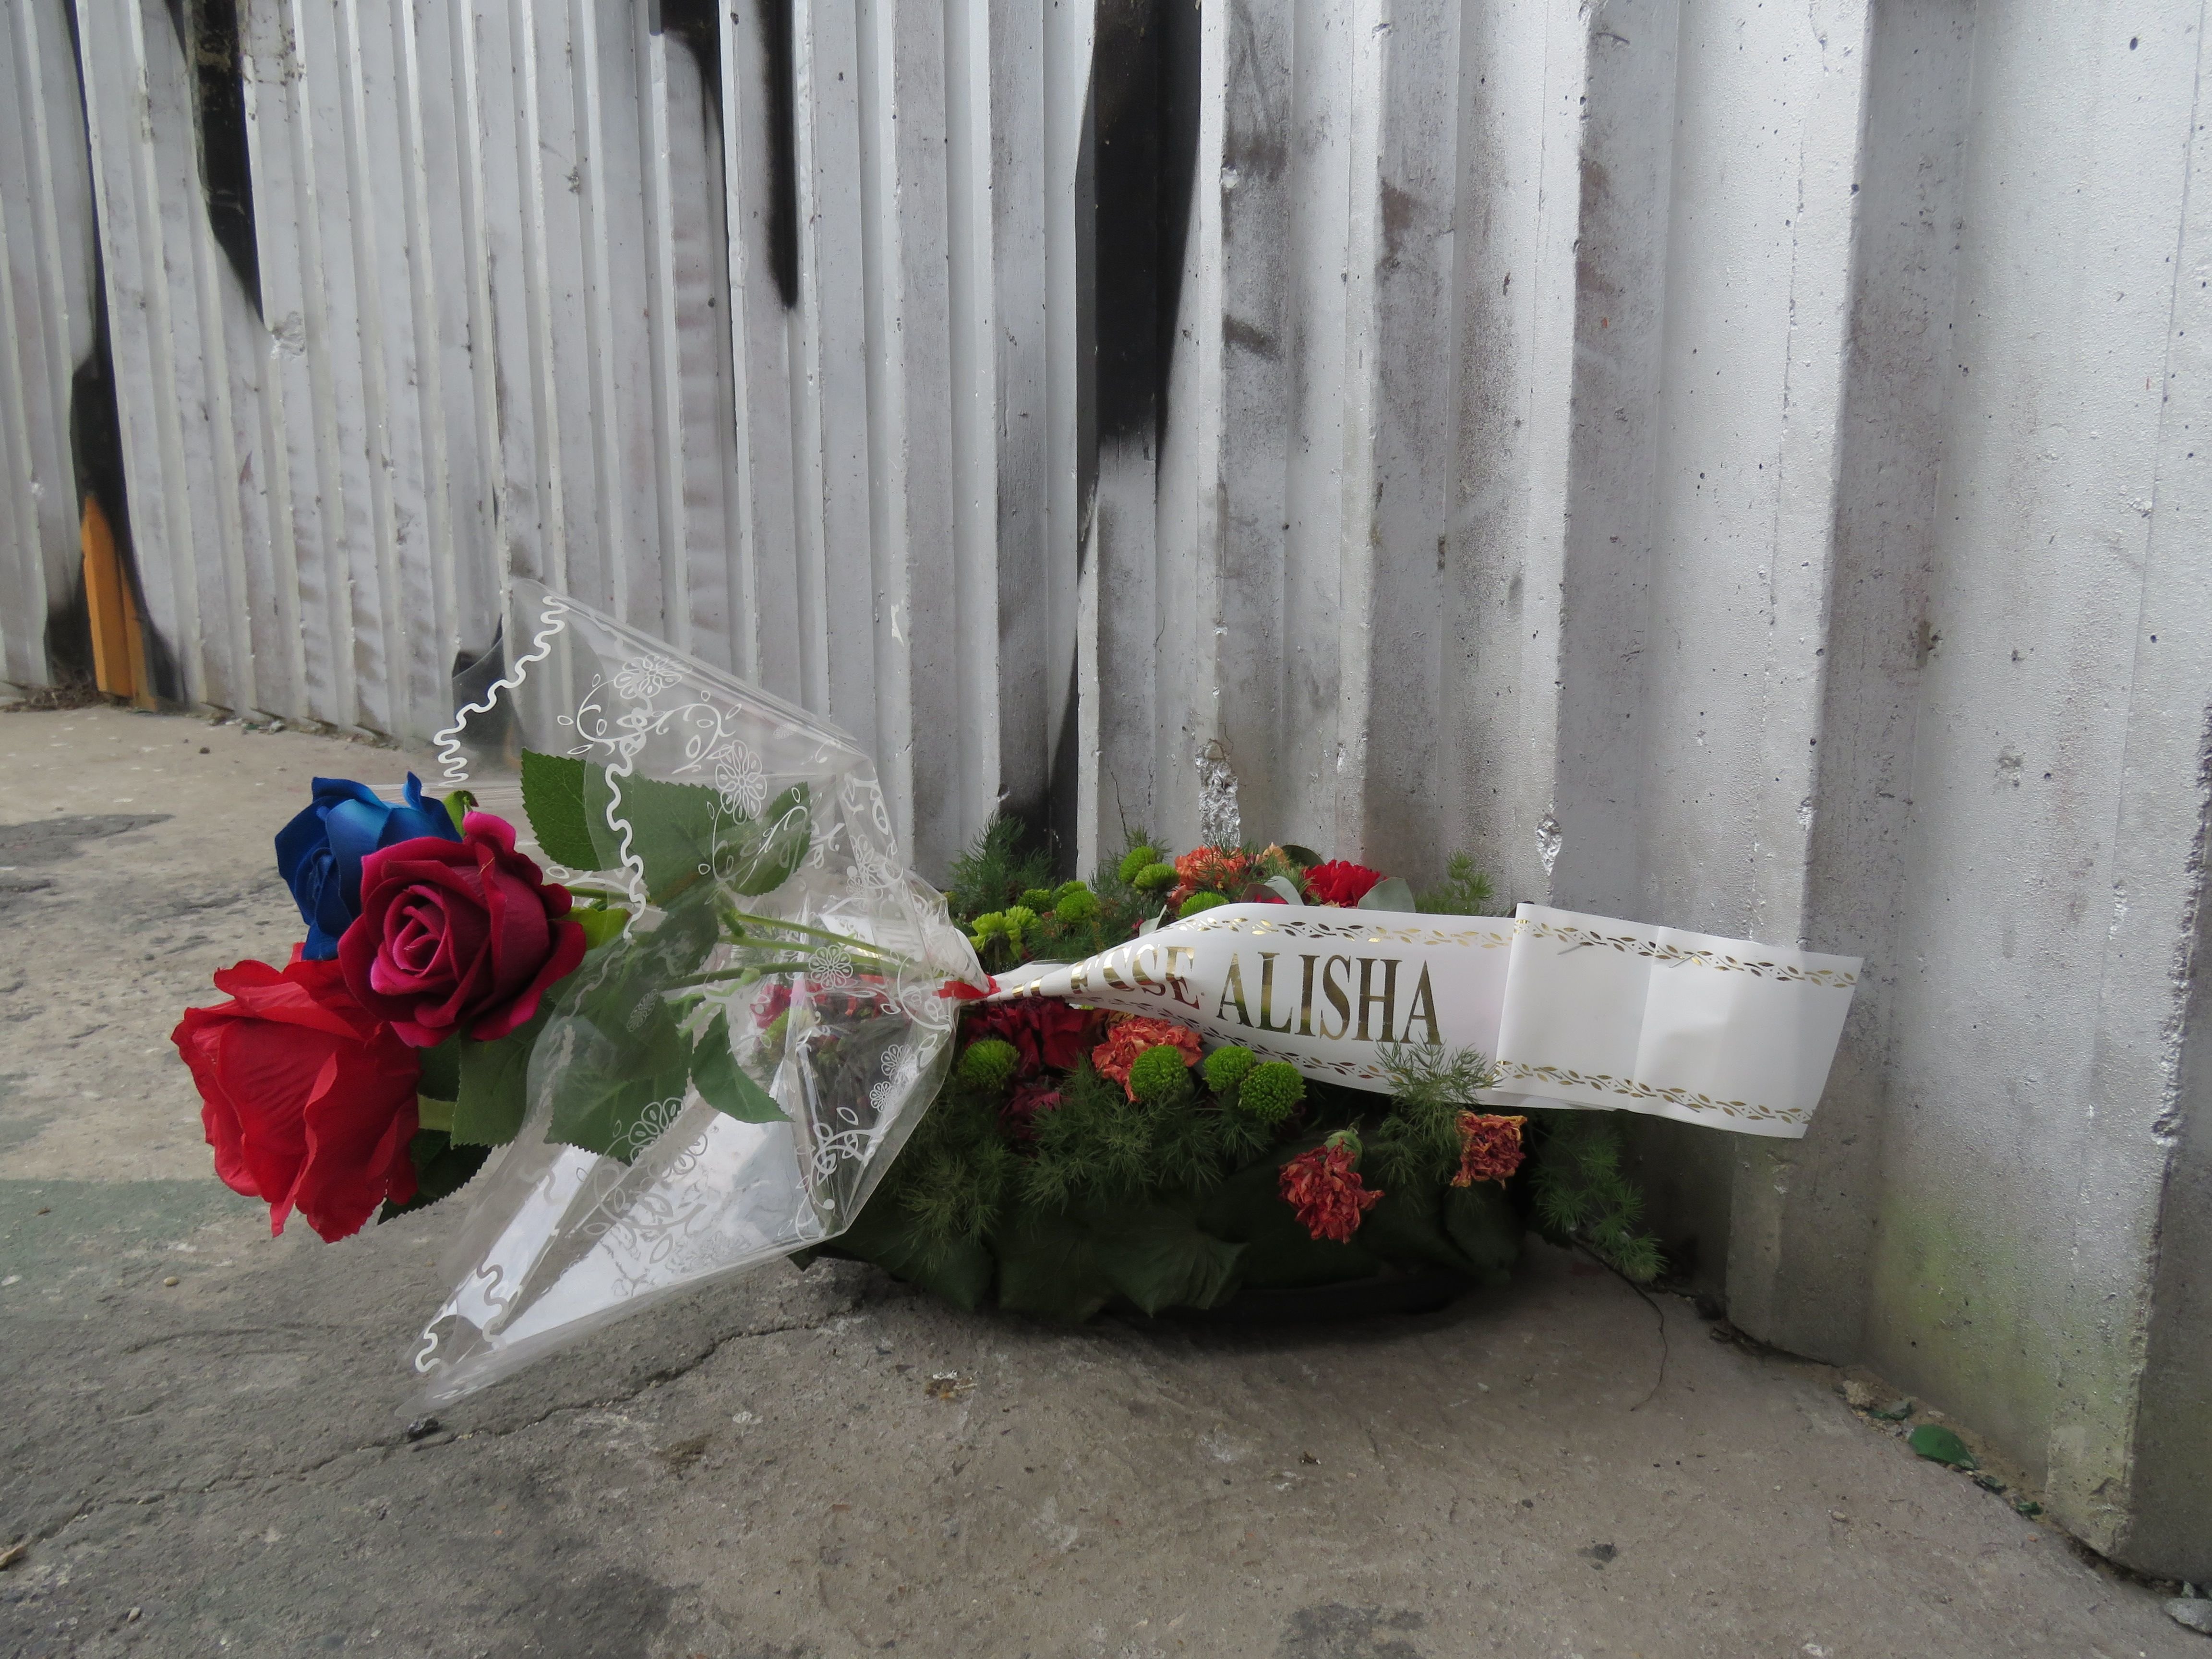 Argenteuil, le 29 mars 2022. La mort d'Alisha, battue puis jetée dans la Seine le 8 mars 2021, avait soulevé une immense émotion. LP/T.C.